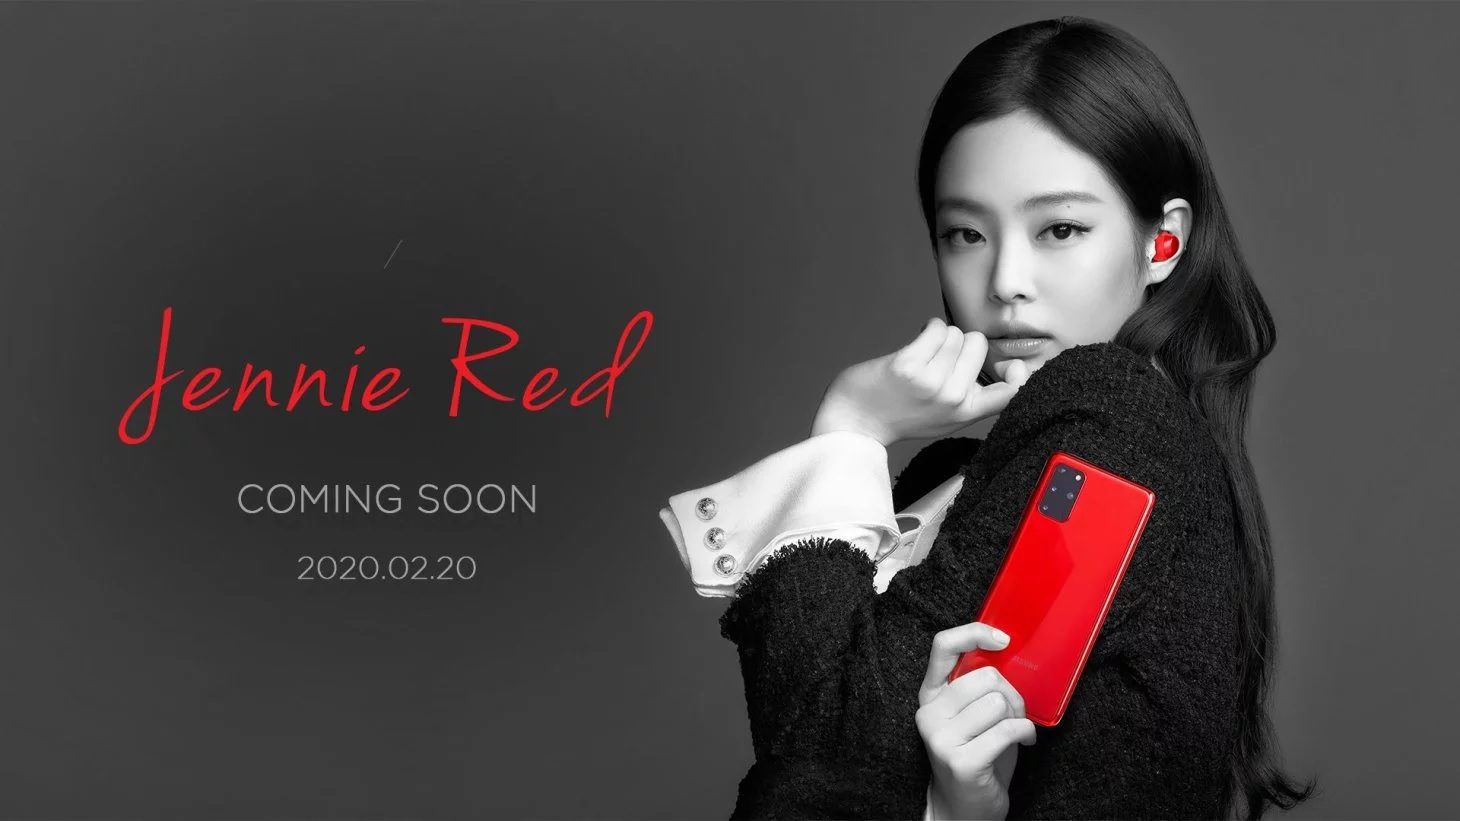 Samsung sælger en Blackpink-mærket Jenny Red Samsung Galaxy S20 + telefon og Galaxy Buds + bundt